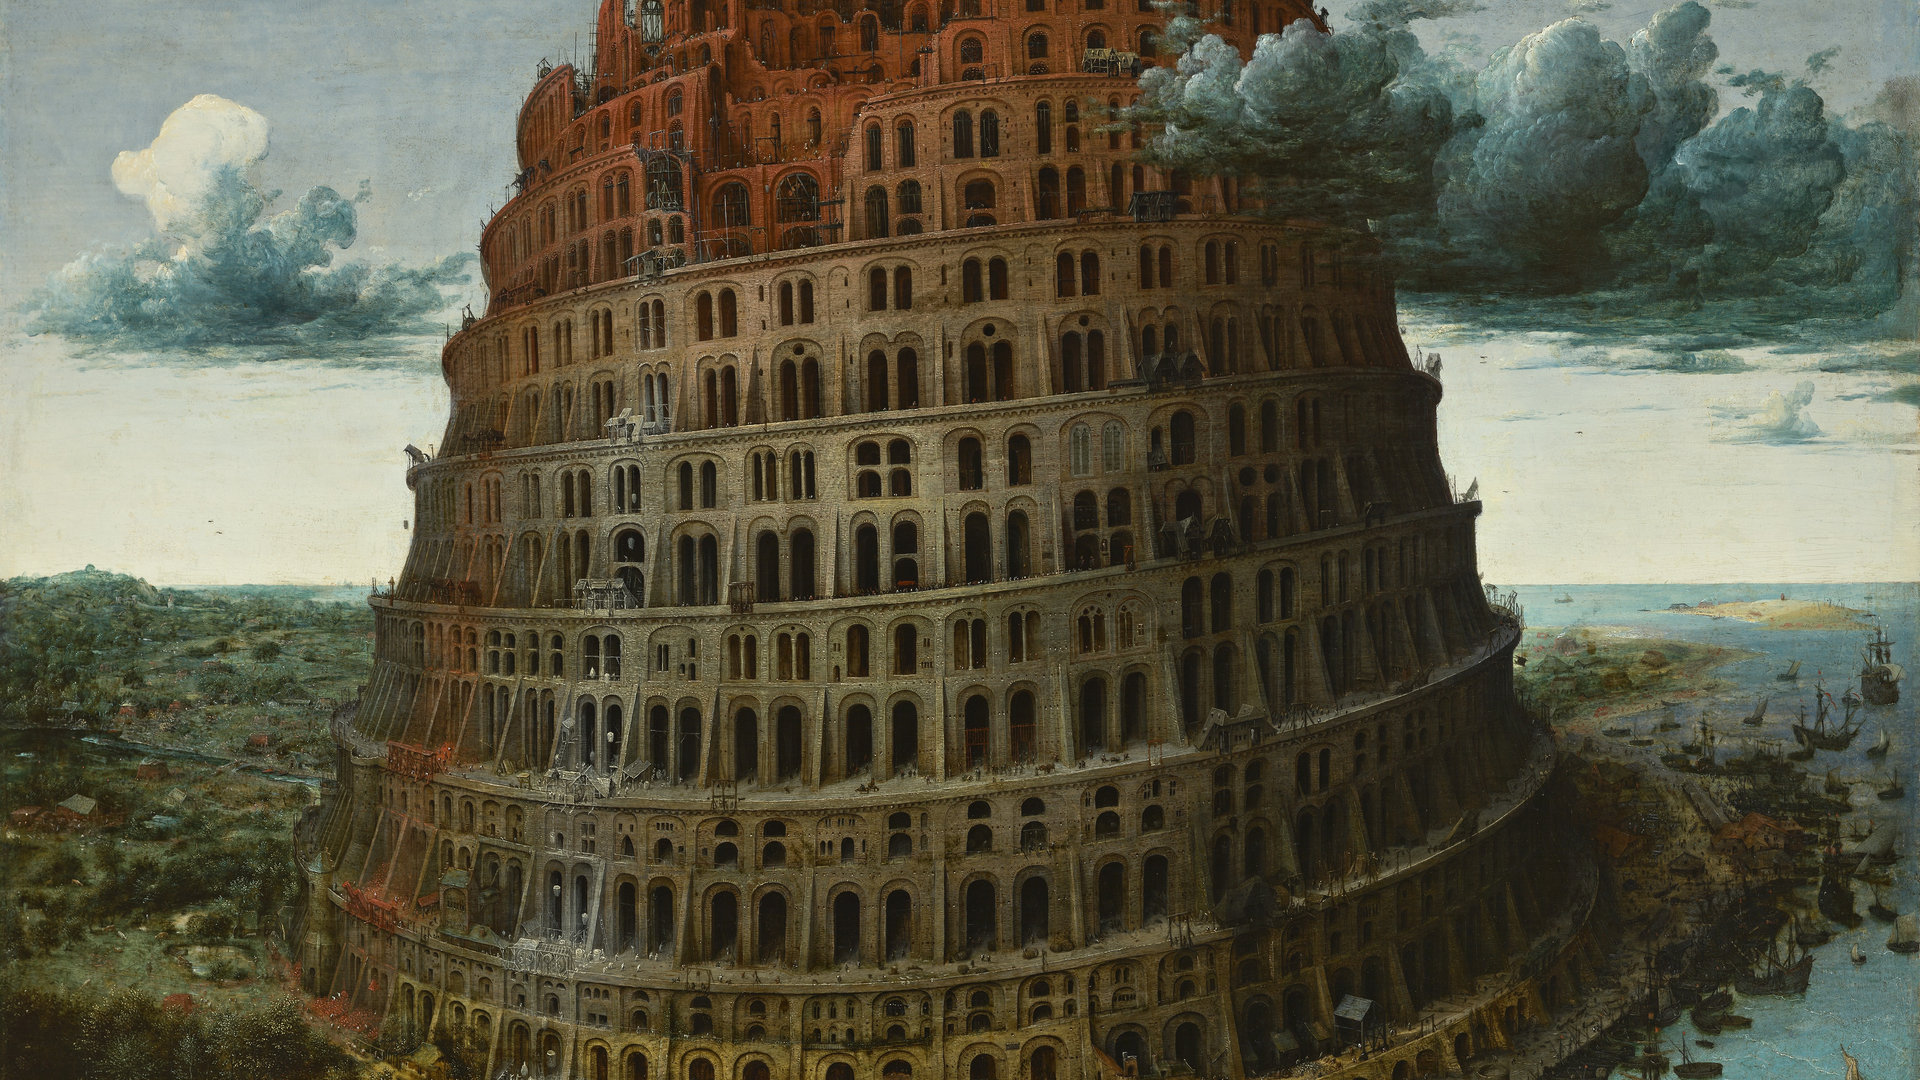 De toren van Babel van Pieter Bruegel